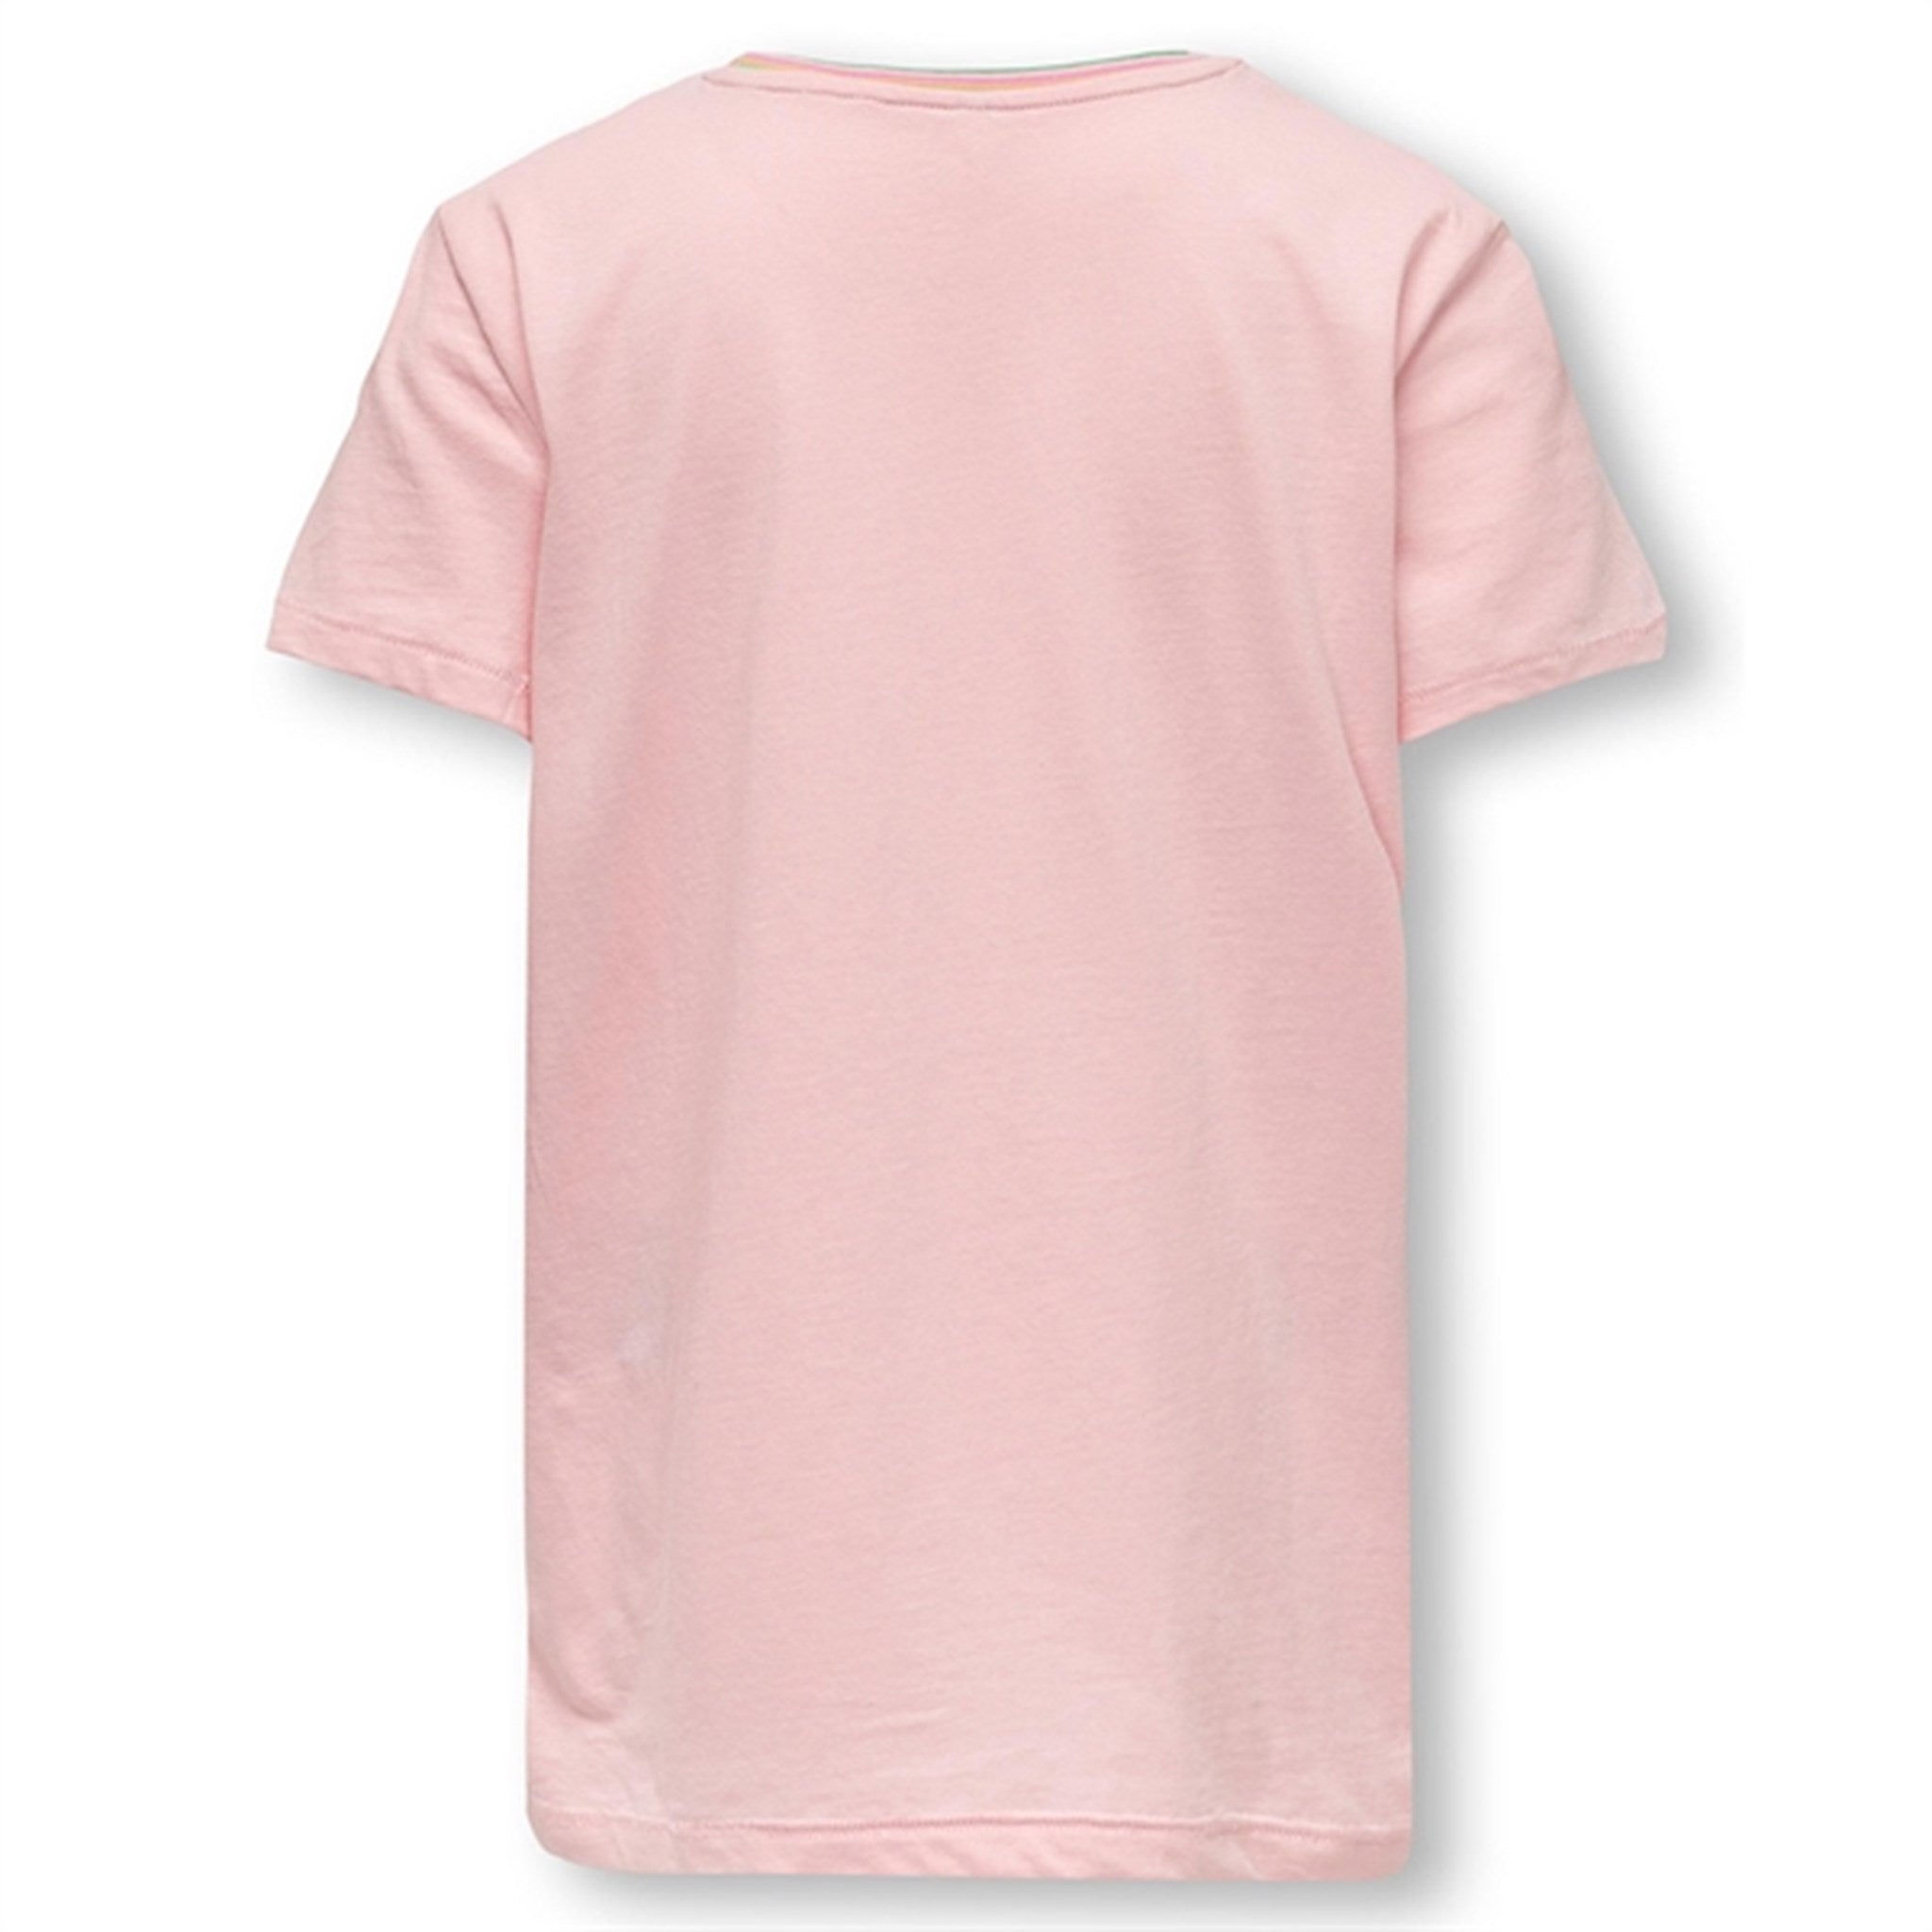 Kids ONLY Tickled Pink Julie Fit Summer T-Shirt 2